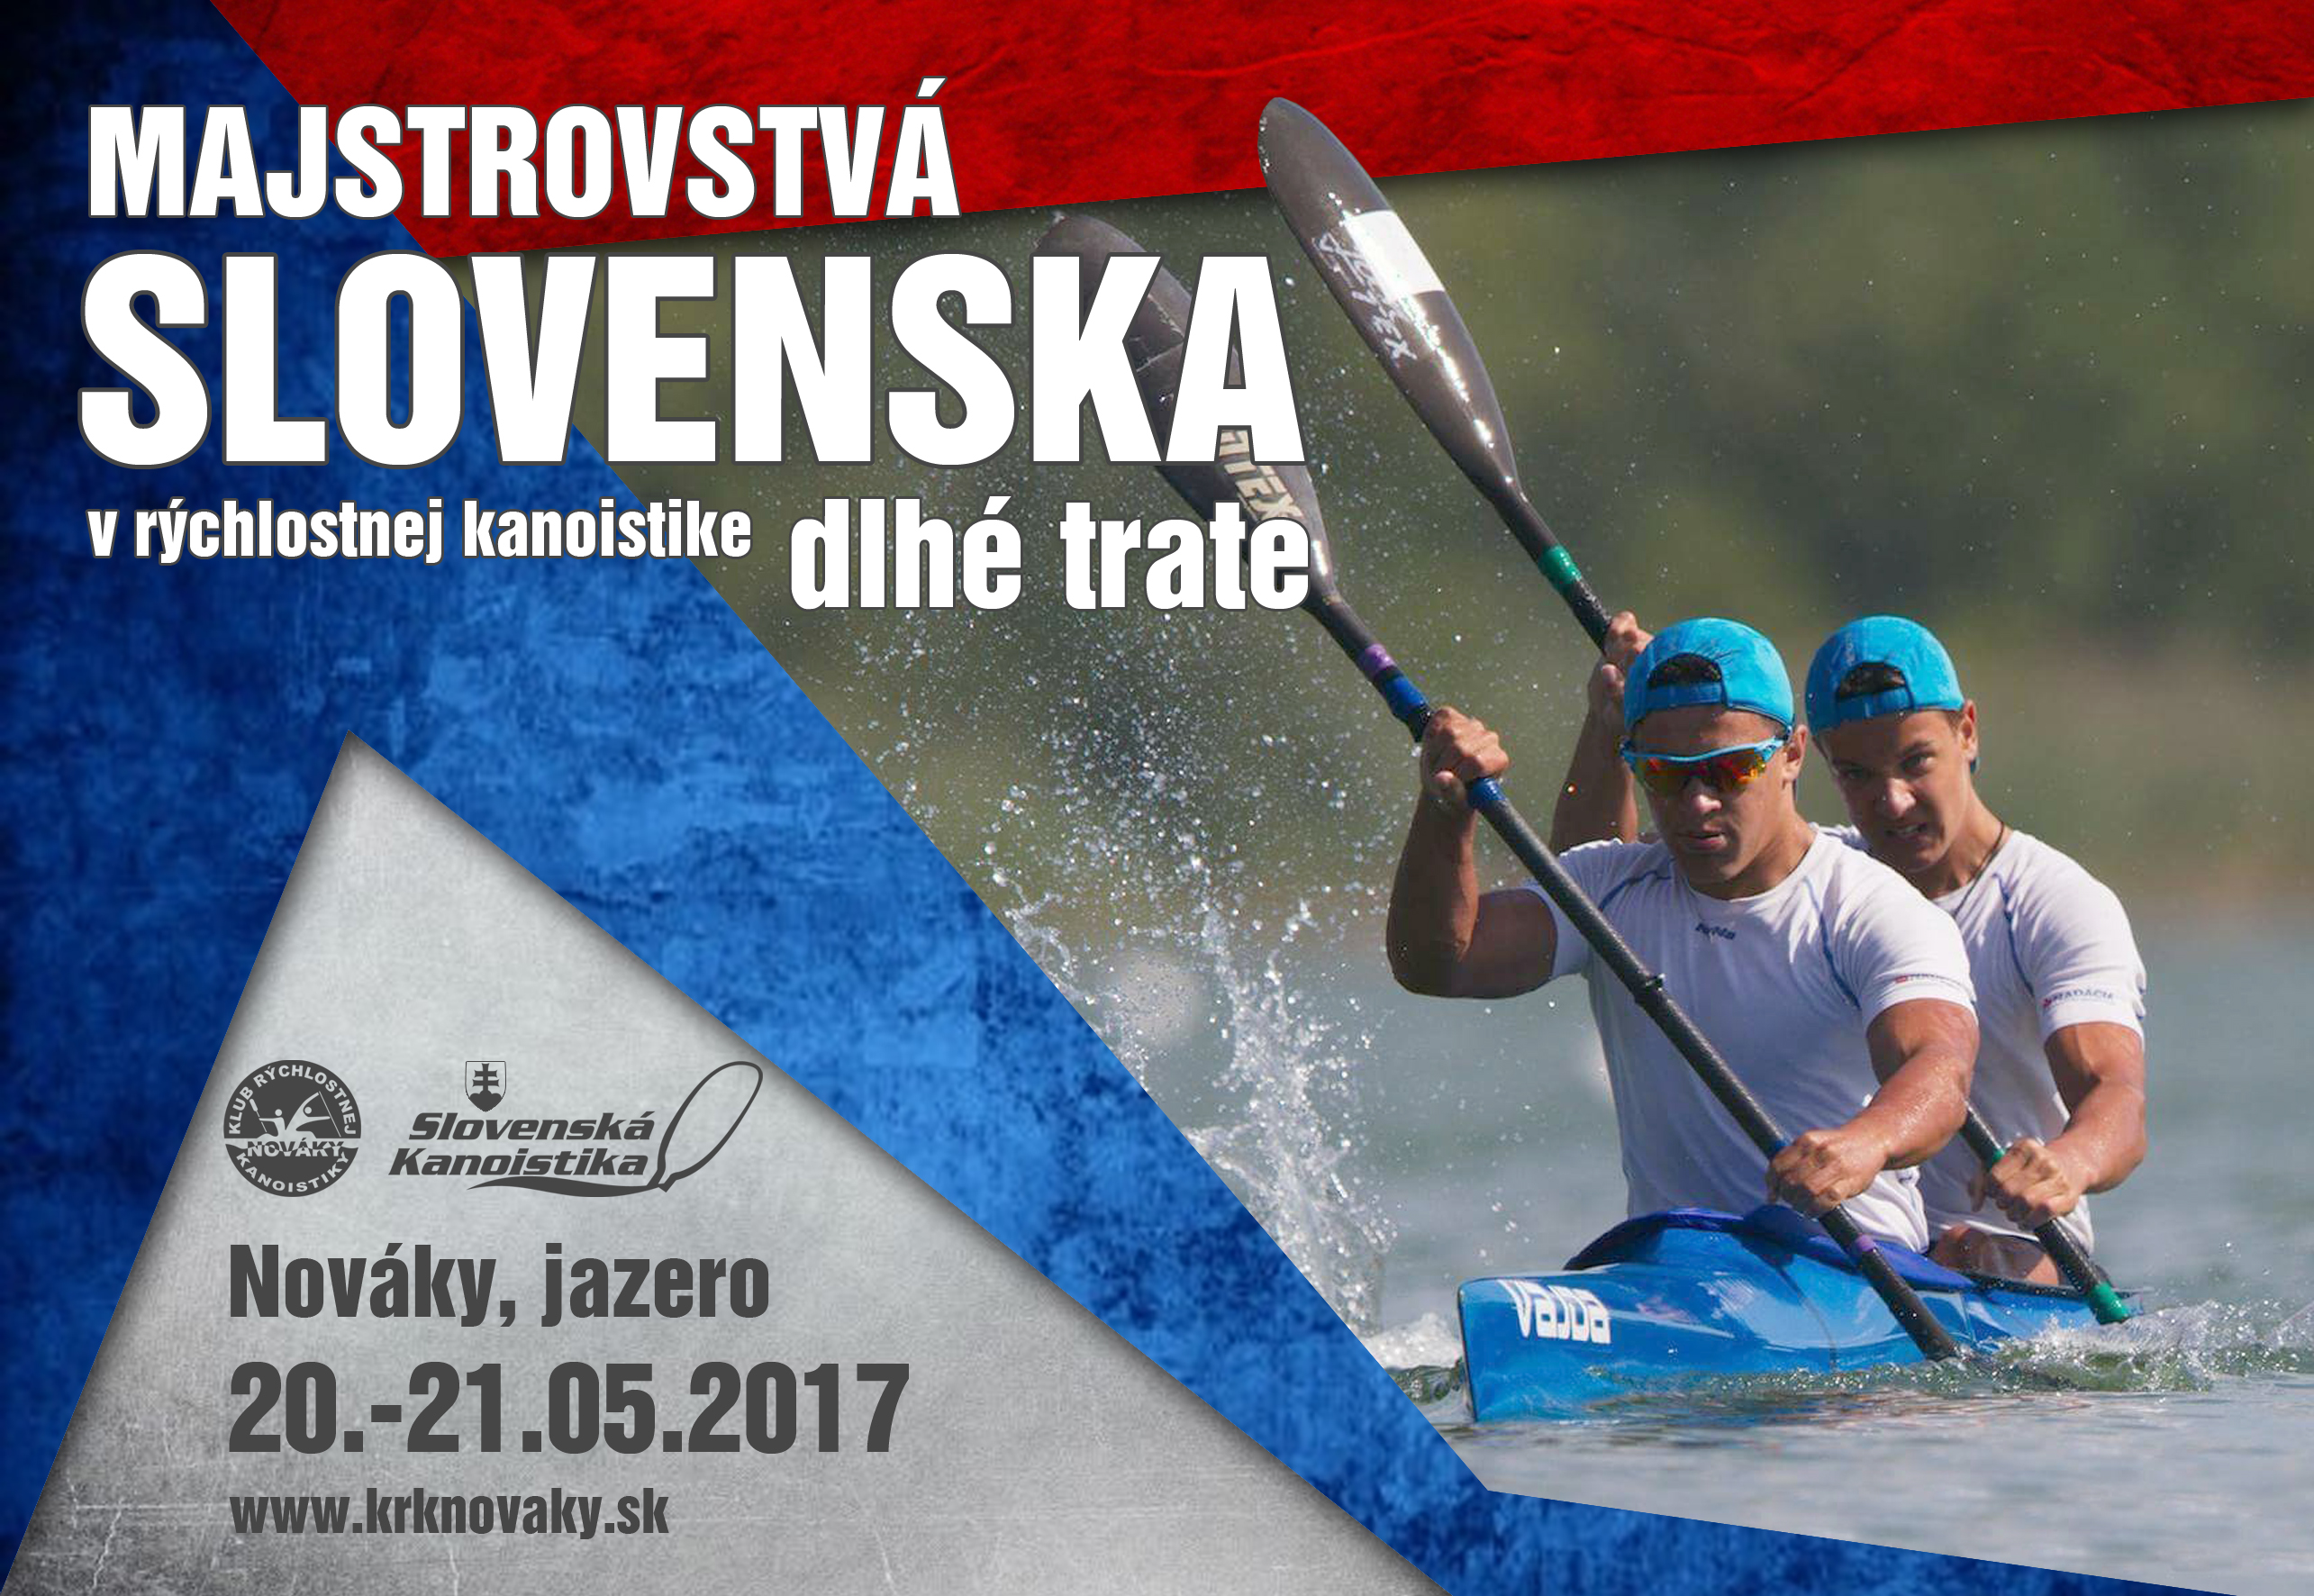 Majstrovstvá Slovenska - dlhé trate 2017 - plagát